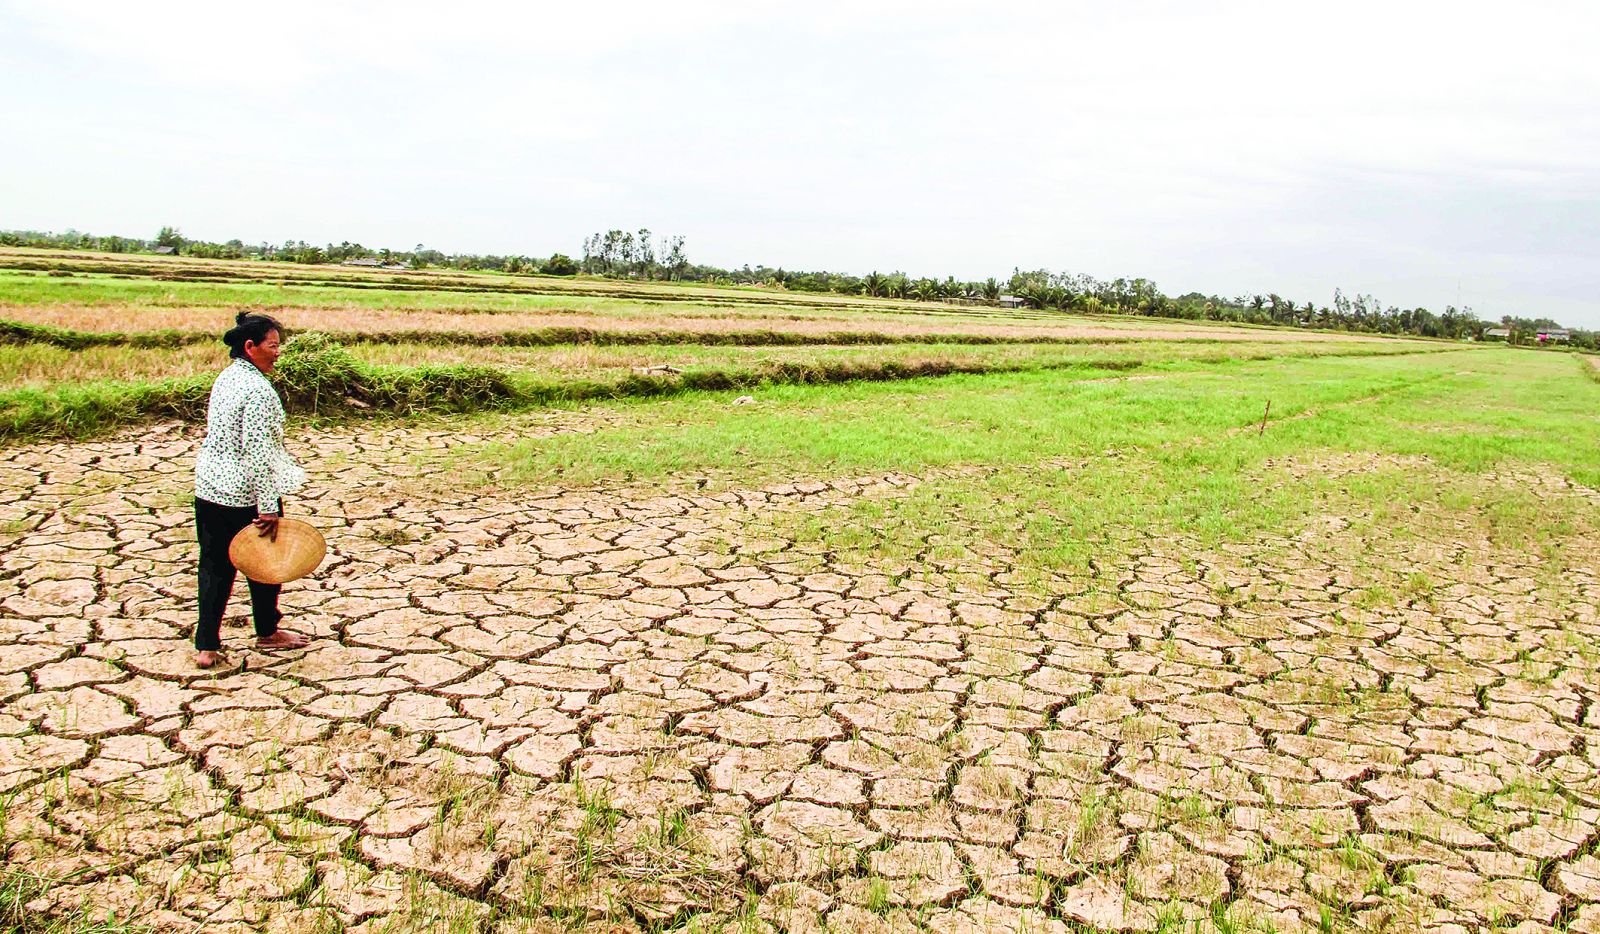 Nông dân vùng ĐBSCL dễ rơi vào tình trạng tái nghèo do tác động của biến đổi khí hậu. Trong ảnh: Tình trạng khô hạn diễn ra ở nhiều địa phương tại ĐBSCL vào mùa khô năm 2016 làm ảnh hưởng đến sản xuất và sinh kế của người dân. Ảnh: CTV